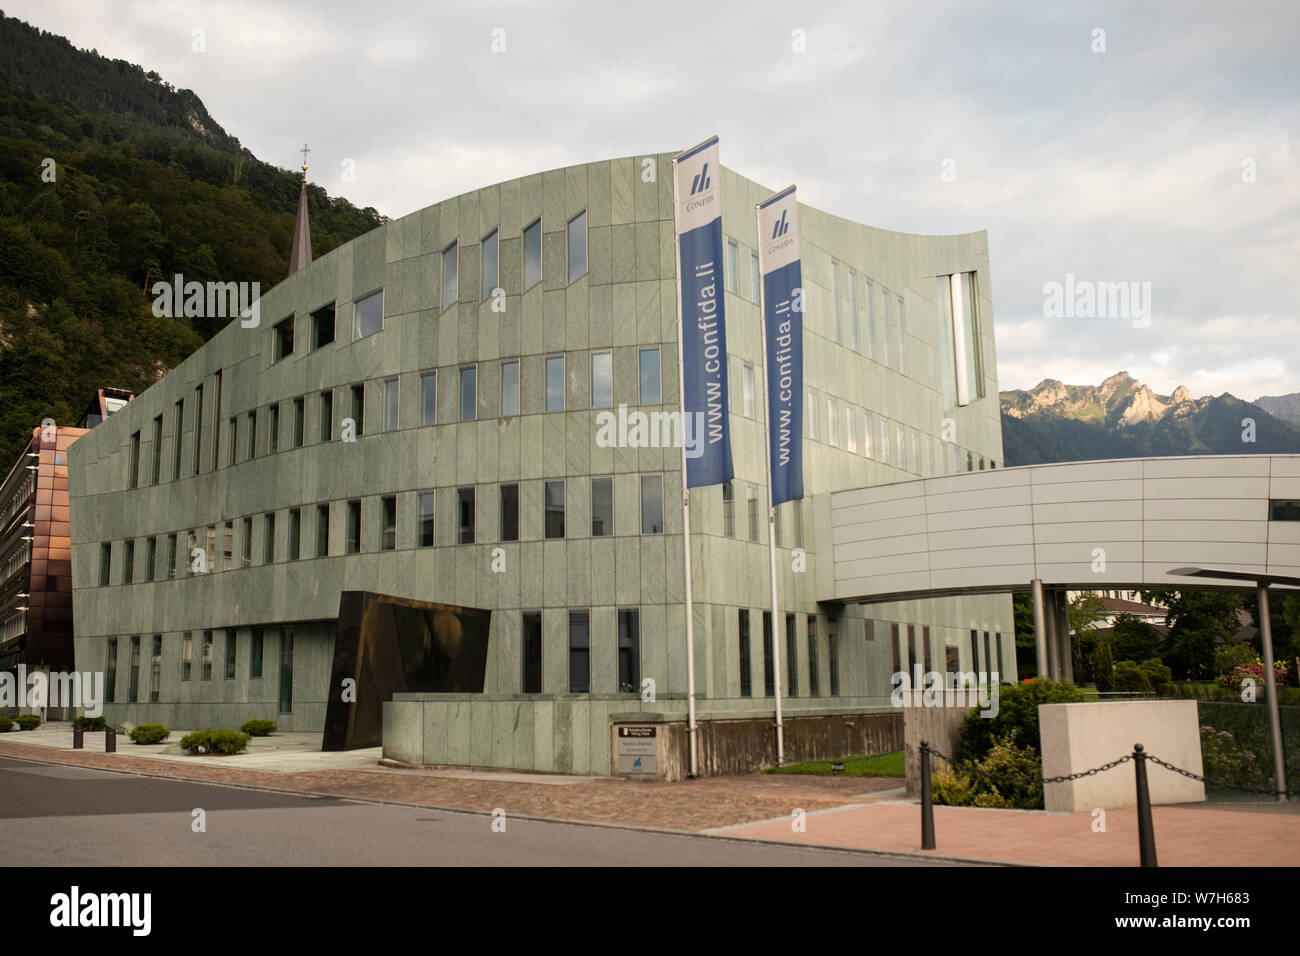 La costruzione di Confida Immobilien AG, un immobiliare e società finanziaria, su Kirchstrasse in Vaduz, Liechtenstein. Foto Stock